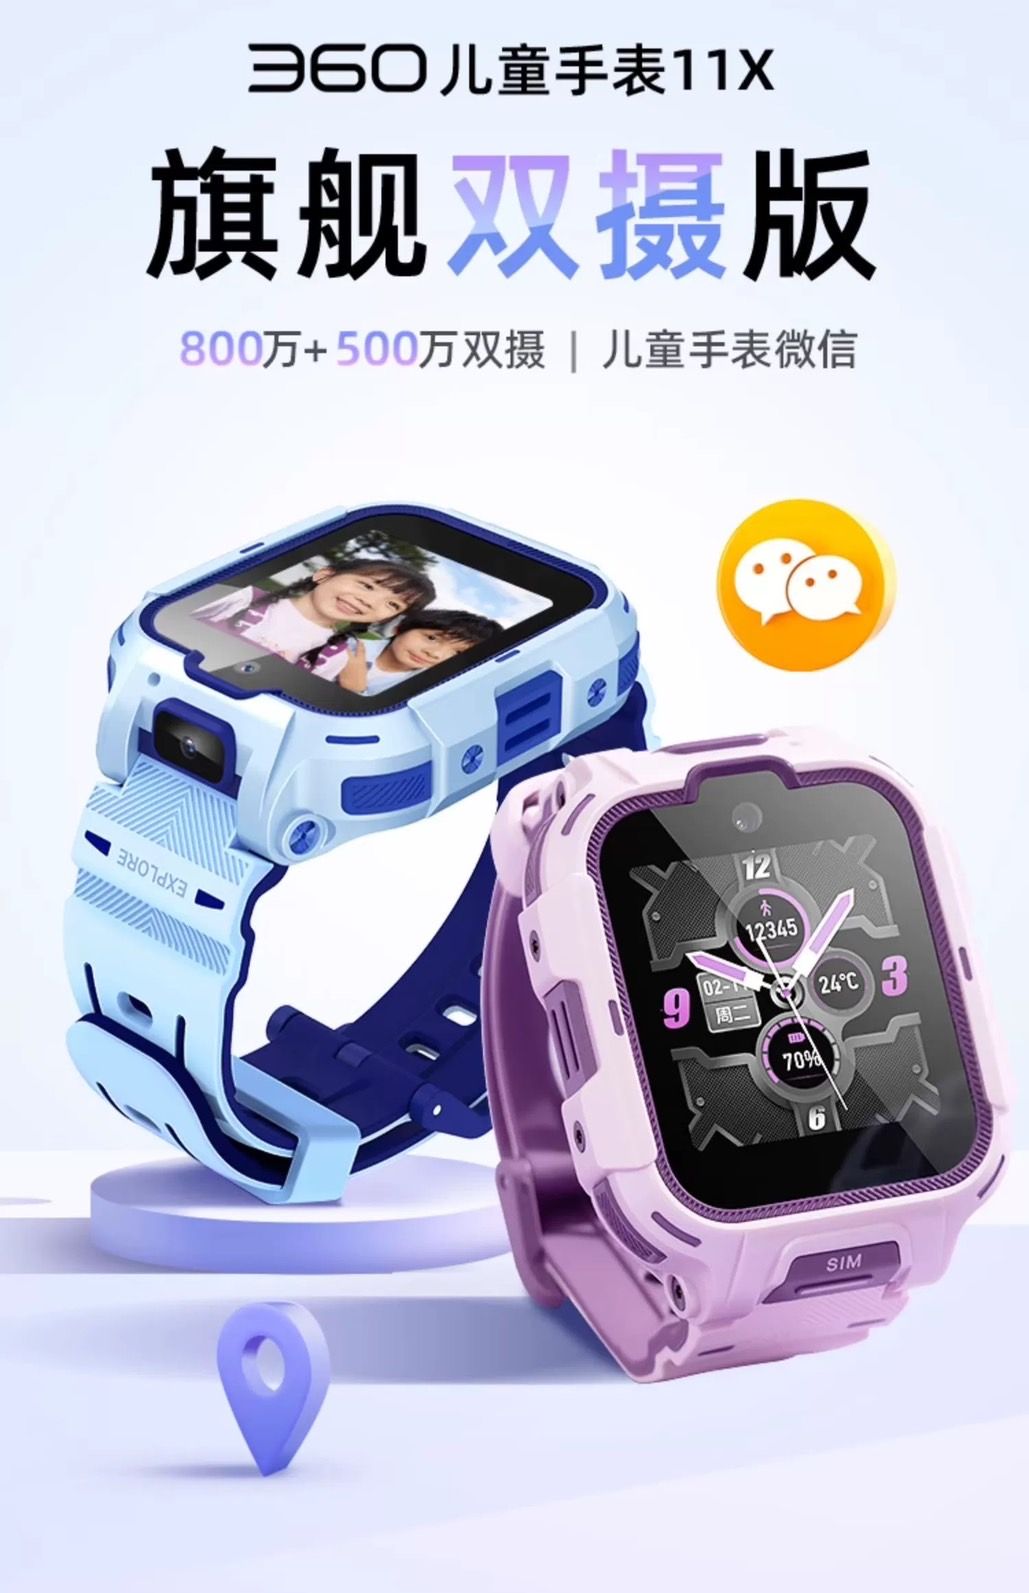 2023年 新款上市 360 11X 旗艦版 兒童手錶 - 10重高精定位 大廣角 原廠一年保固 預購